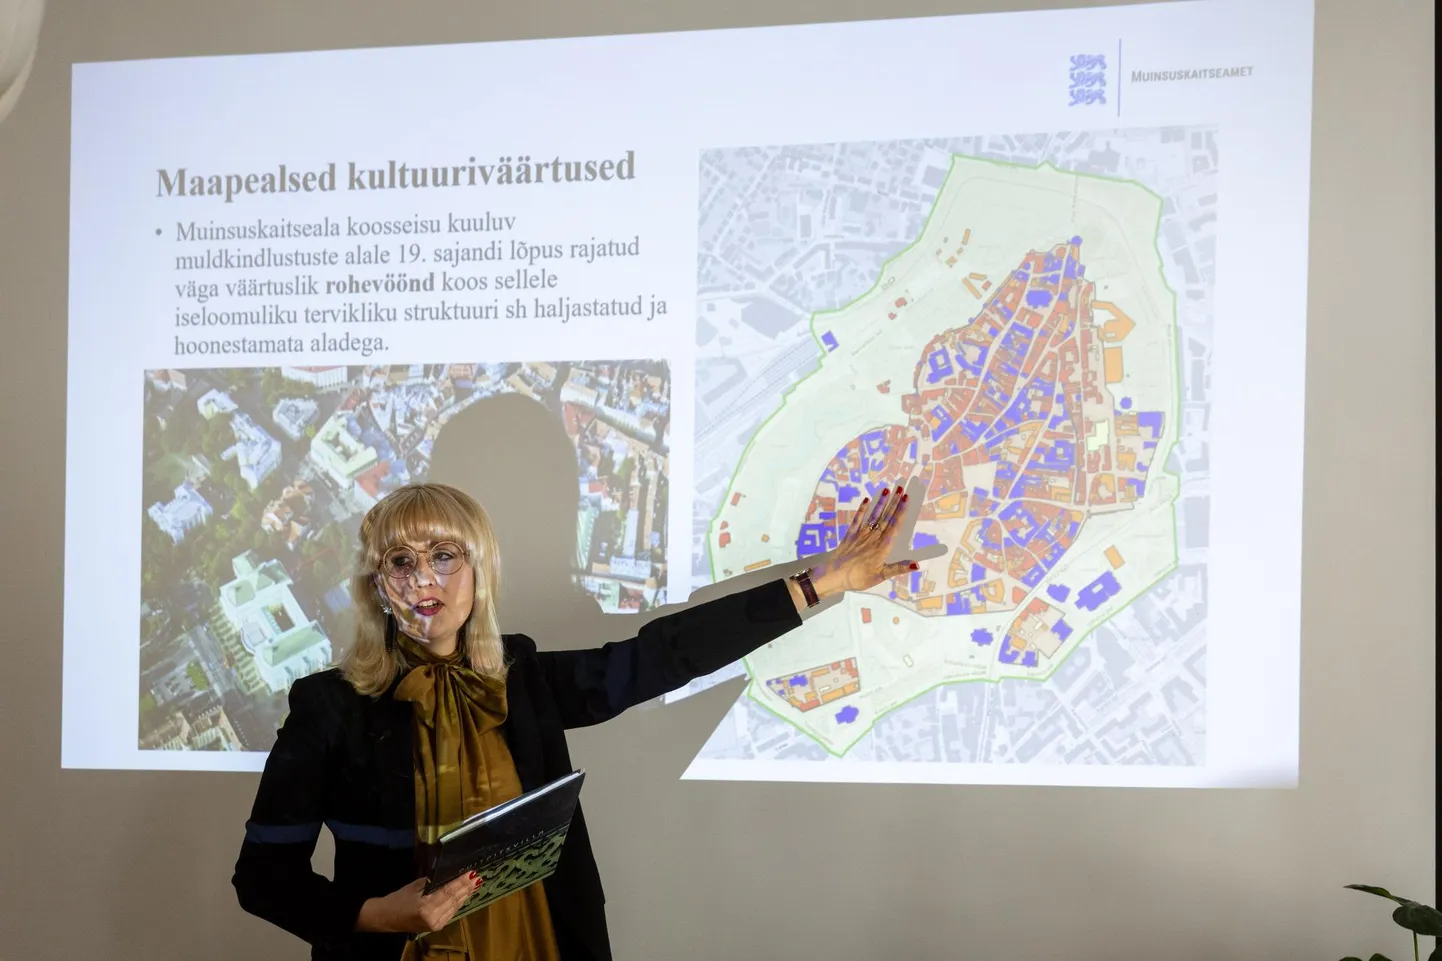 Анита Стауб, руководитель отдела строительного наследия Департамента охраны памятников старины, представила ценности театра «Эстония» и его окрестностей.